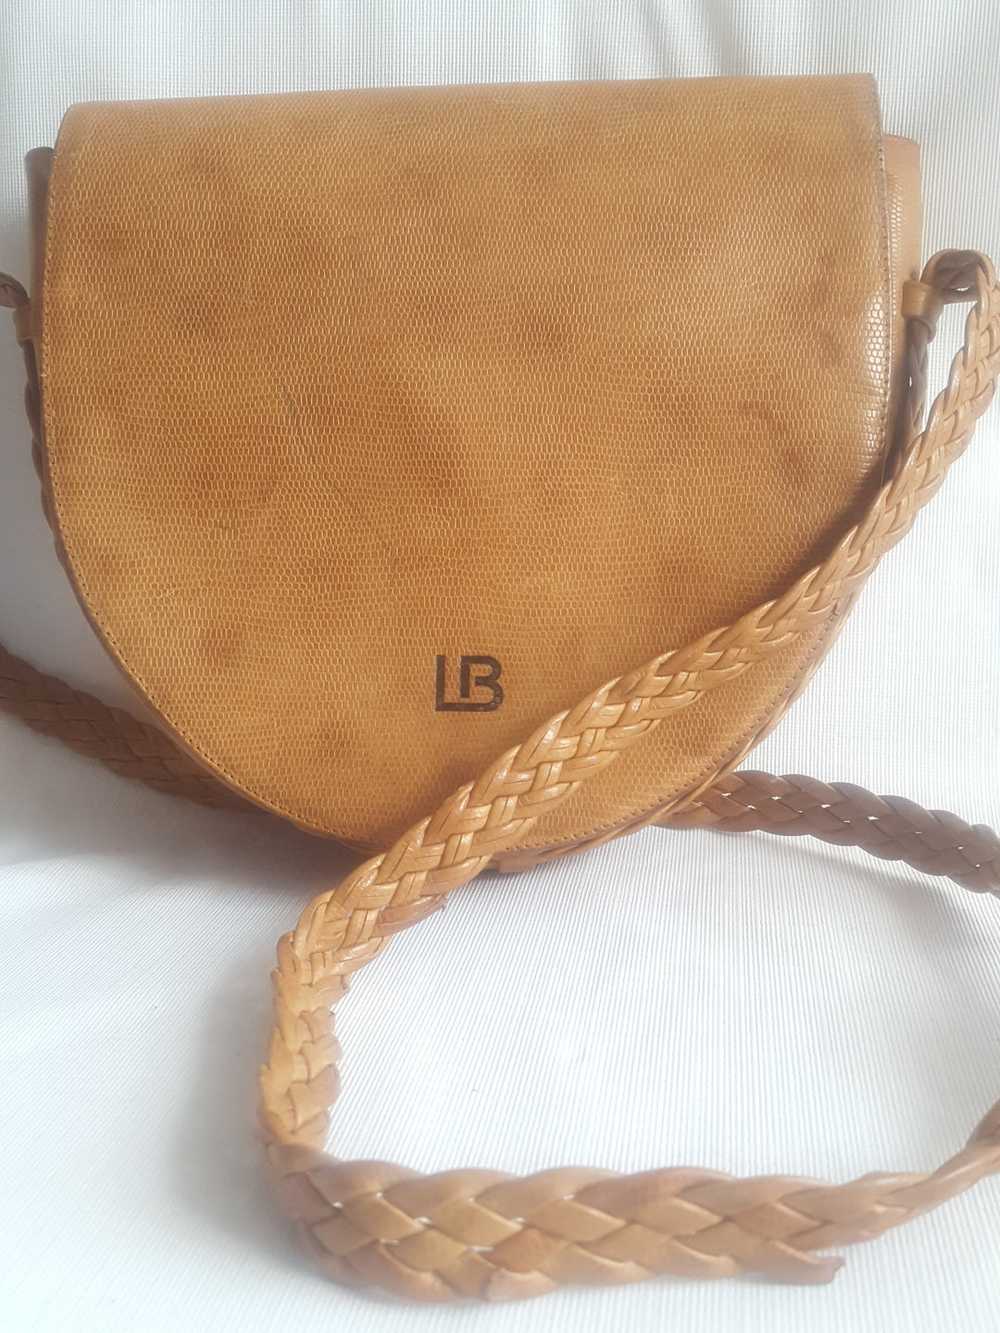 Laura Biagiotti Vintage Leather Saddle Bag - image 10